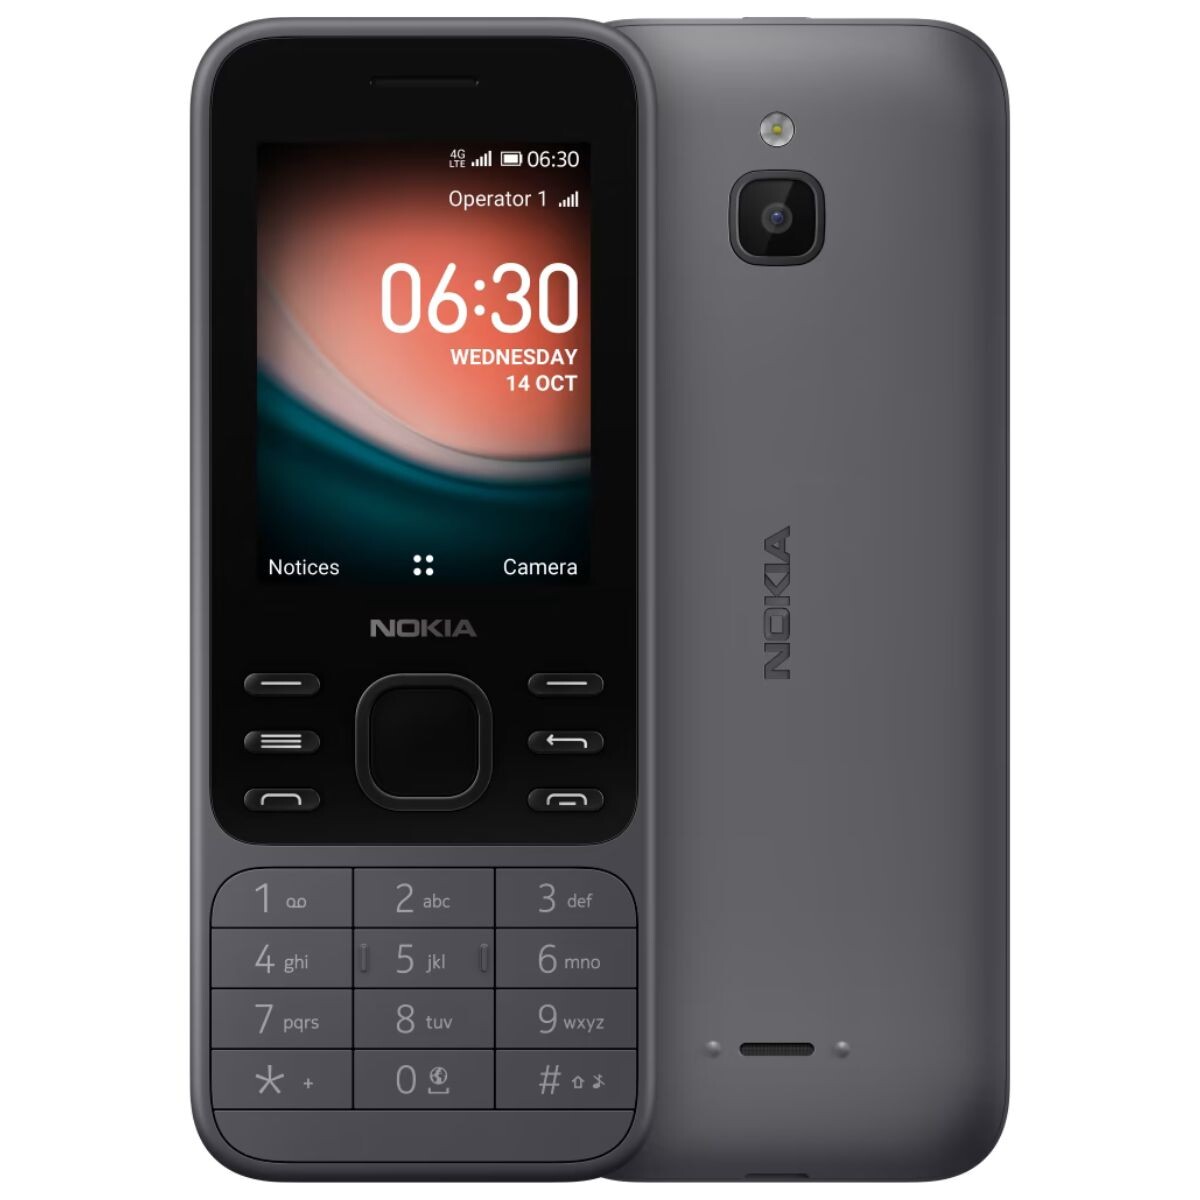 Celular Nokia 6300 4G con whatsapp 